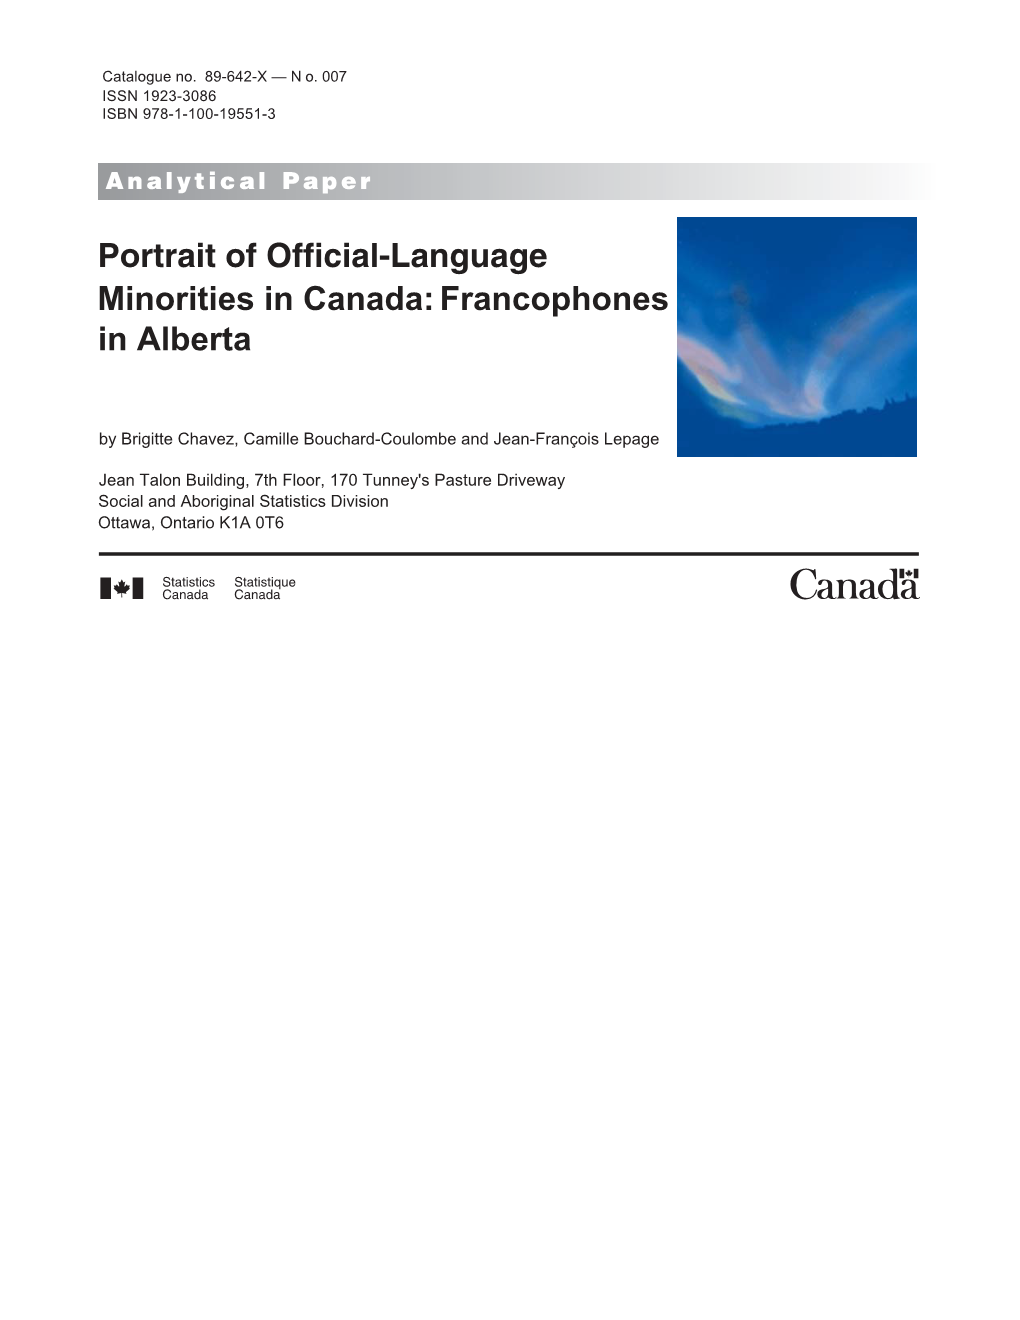 Portrait of Official-Language Minorities in Canada: Francophones in Alberta